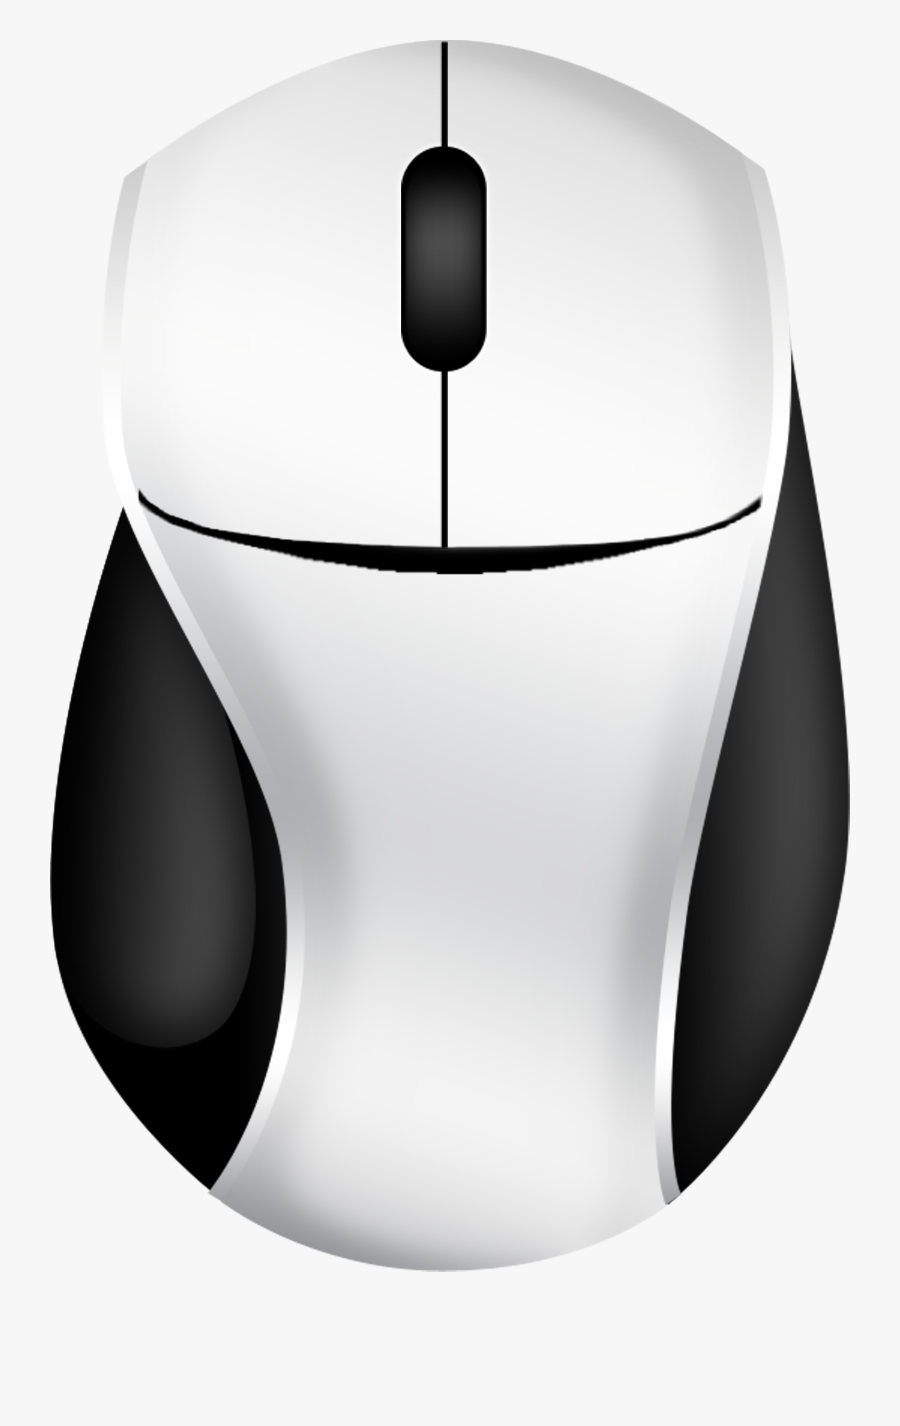 Computer Mouse Clipart - Computer Mouse, Transparent Clipart